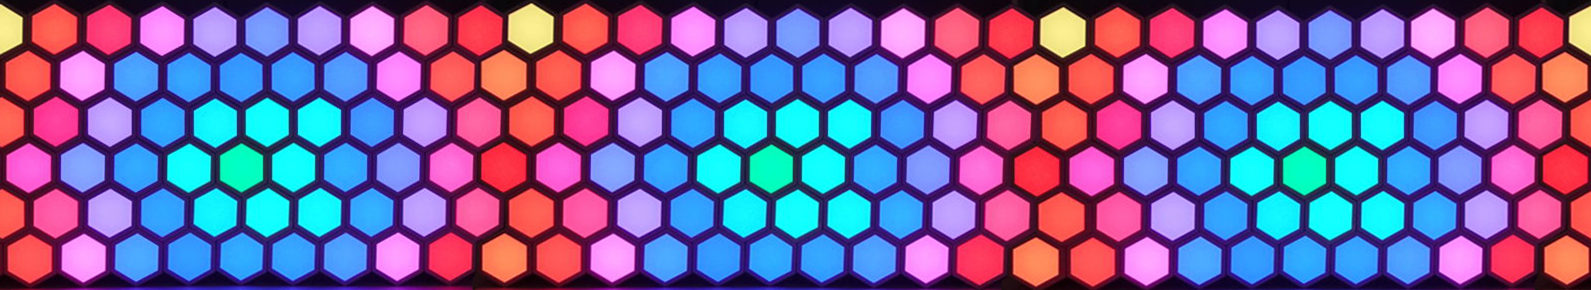 Honeycomb LED Display